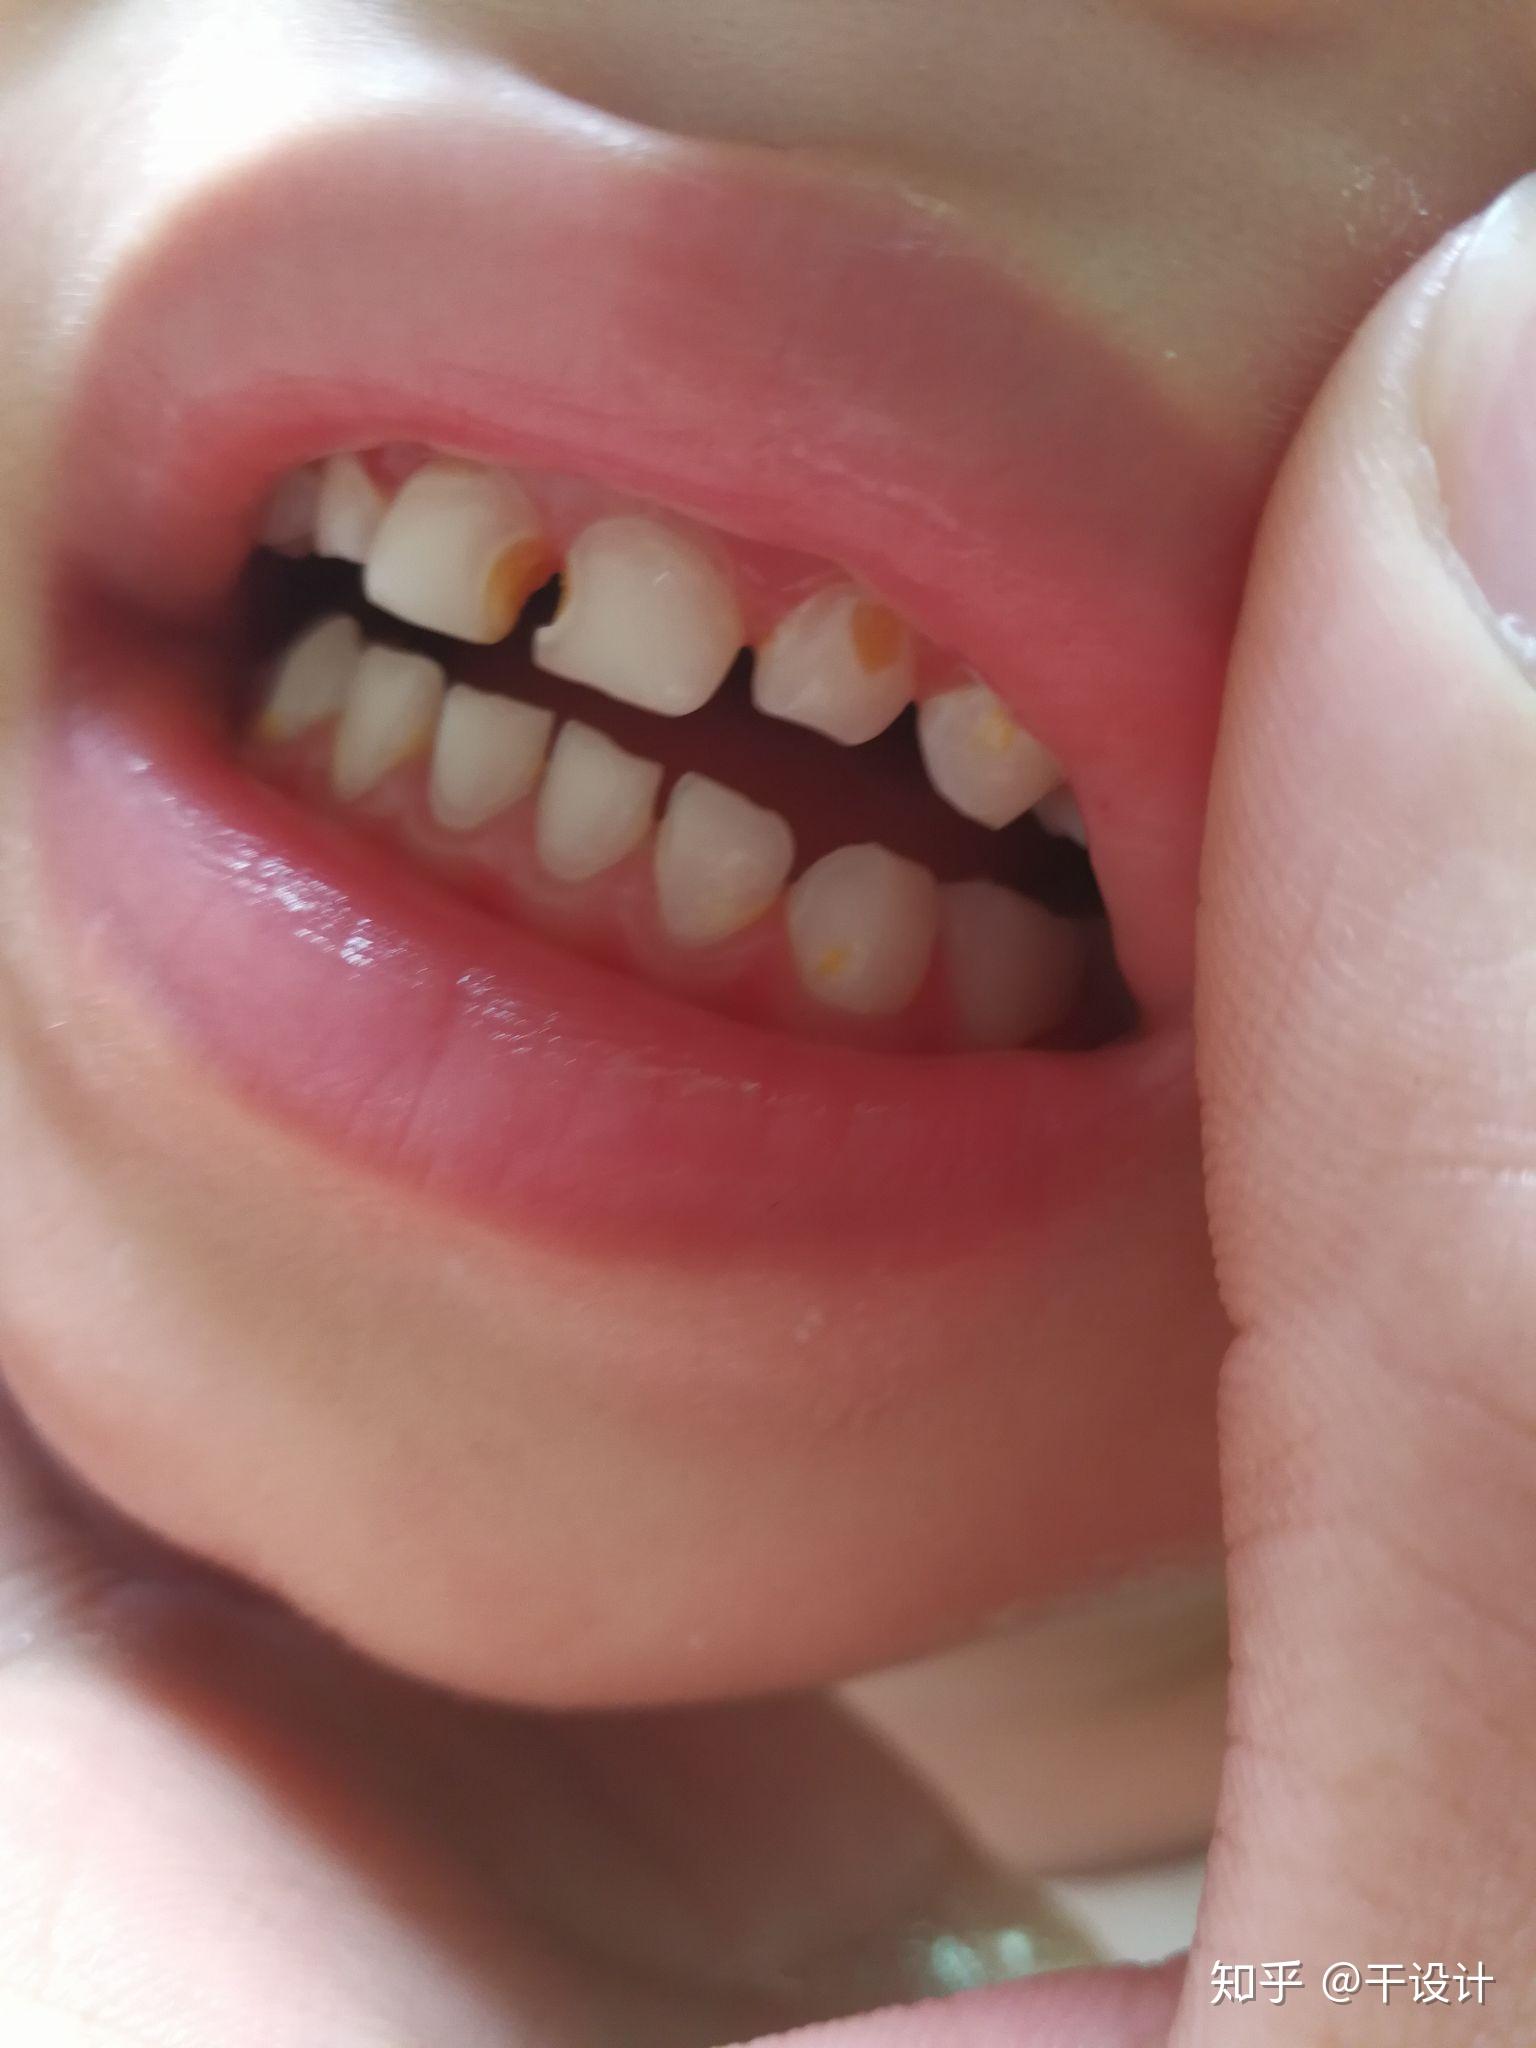 小孩牙齿矿化图片图片